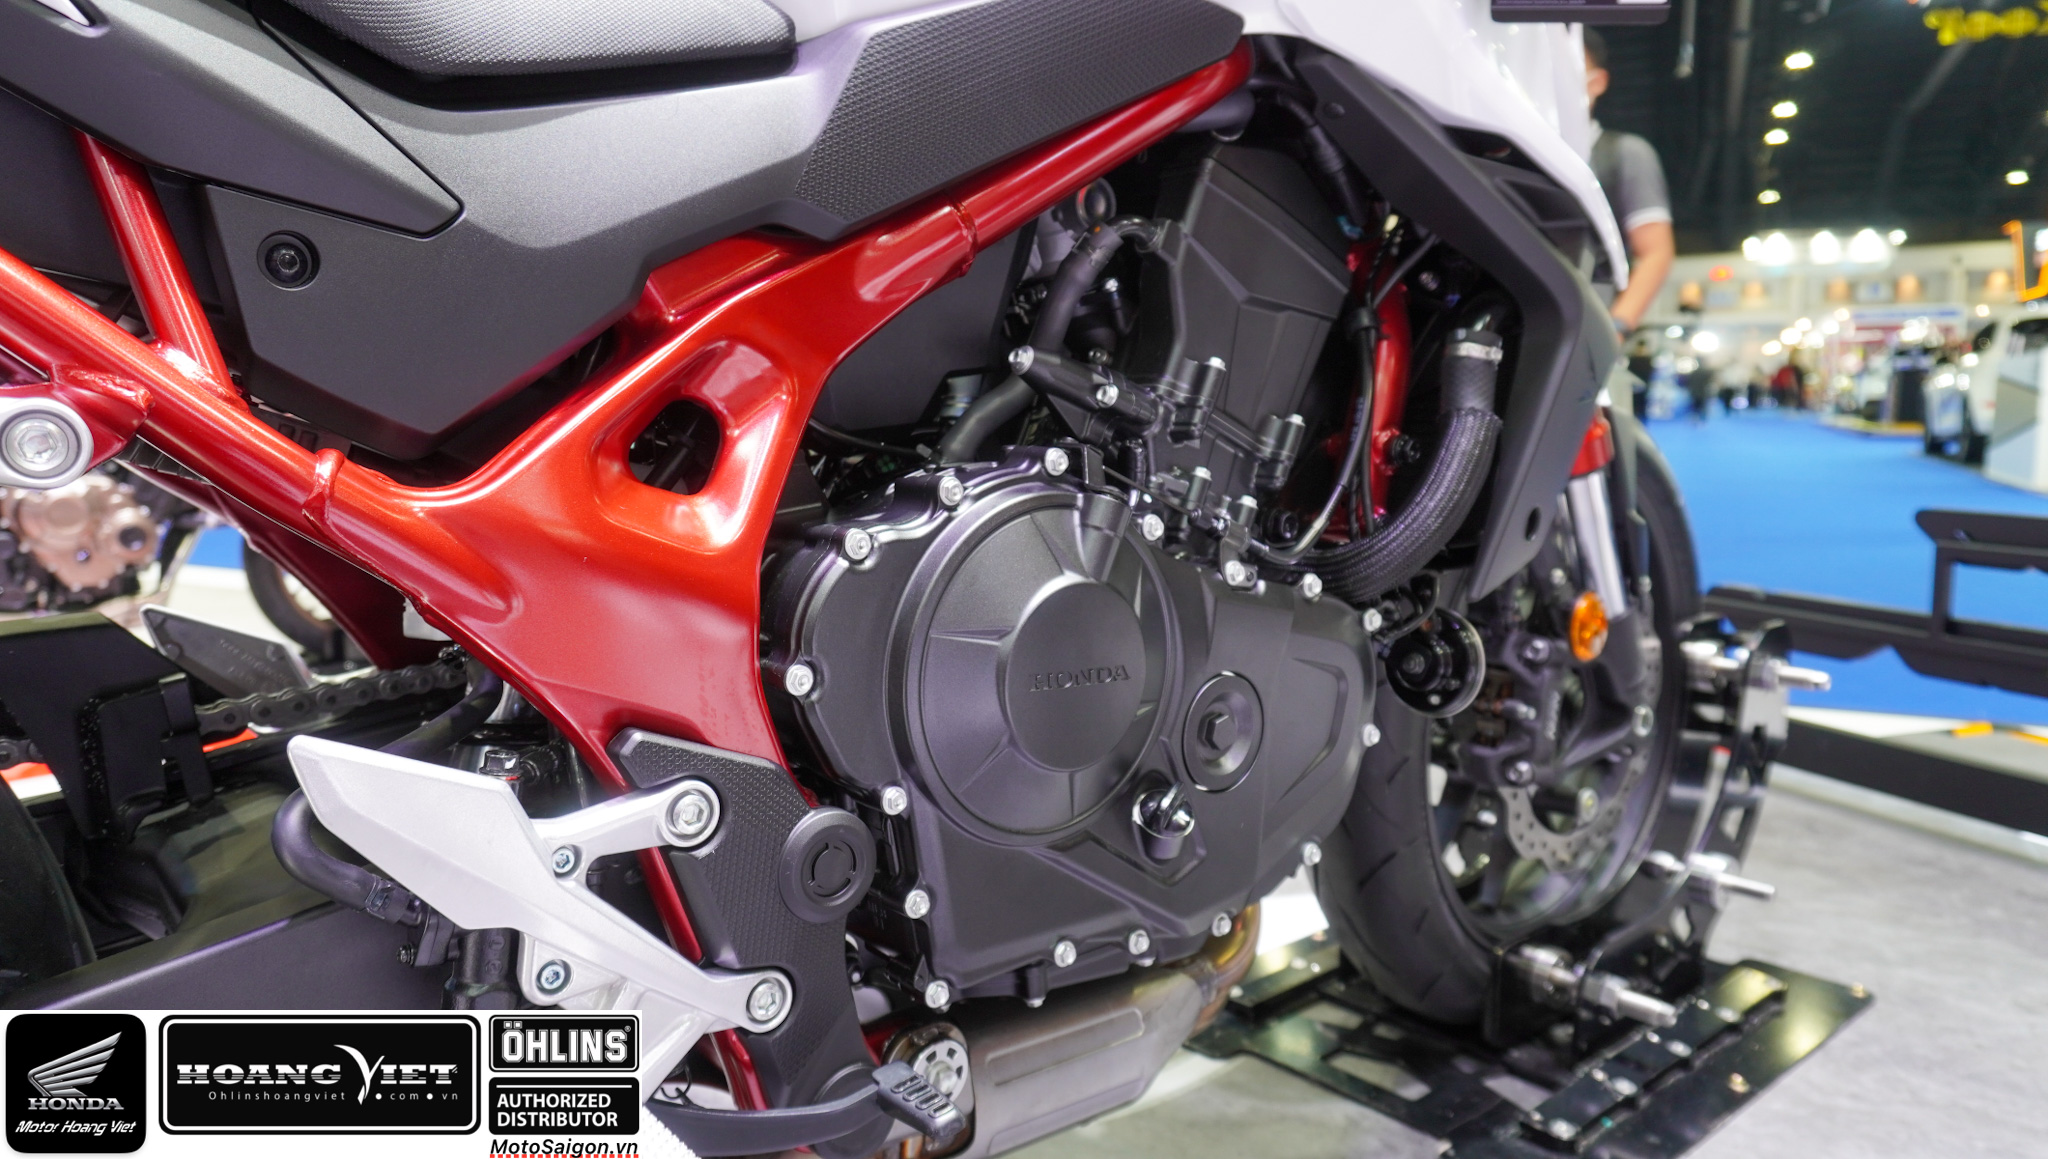 Honda CB750 Hornet trên yên khám phá thực tế kèm giá bán  Motosaigon